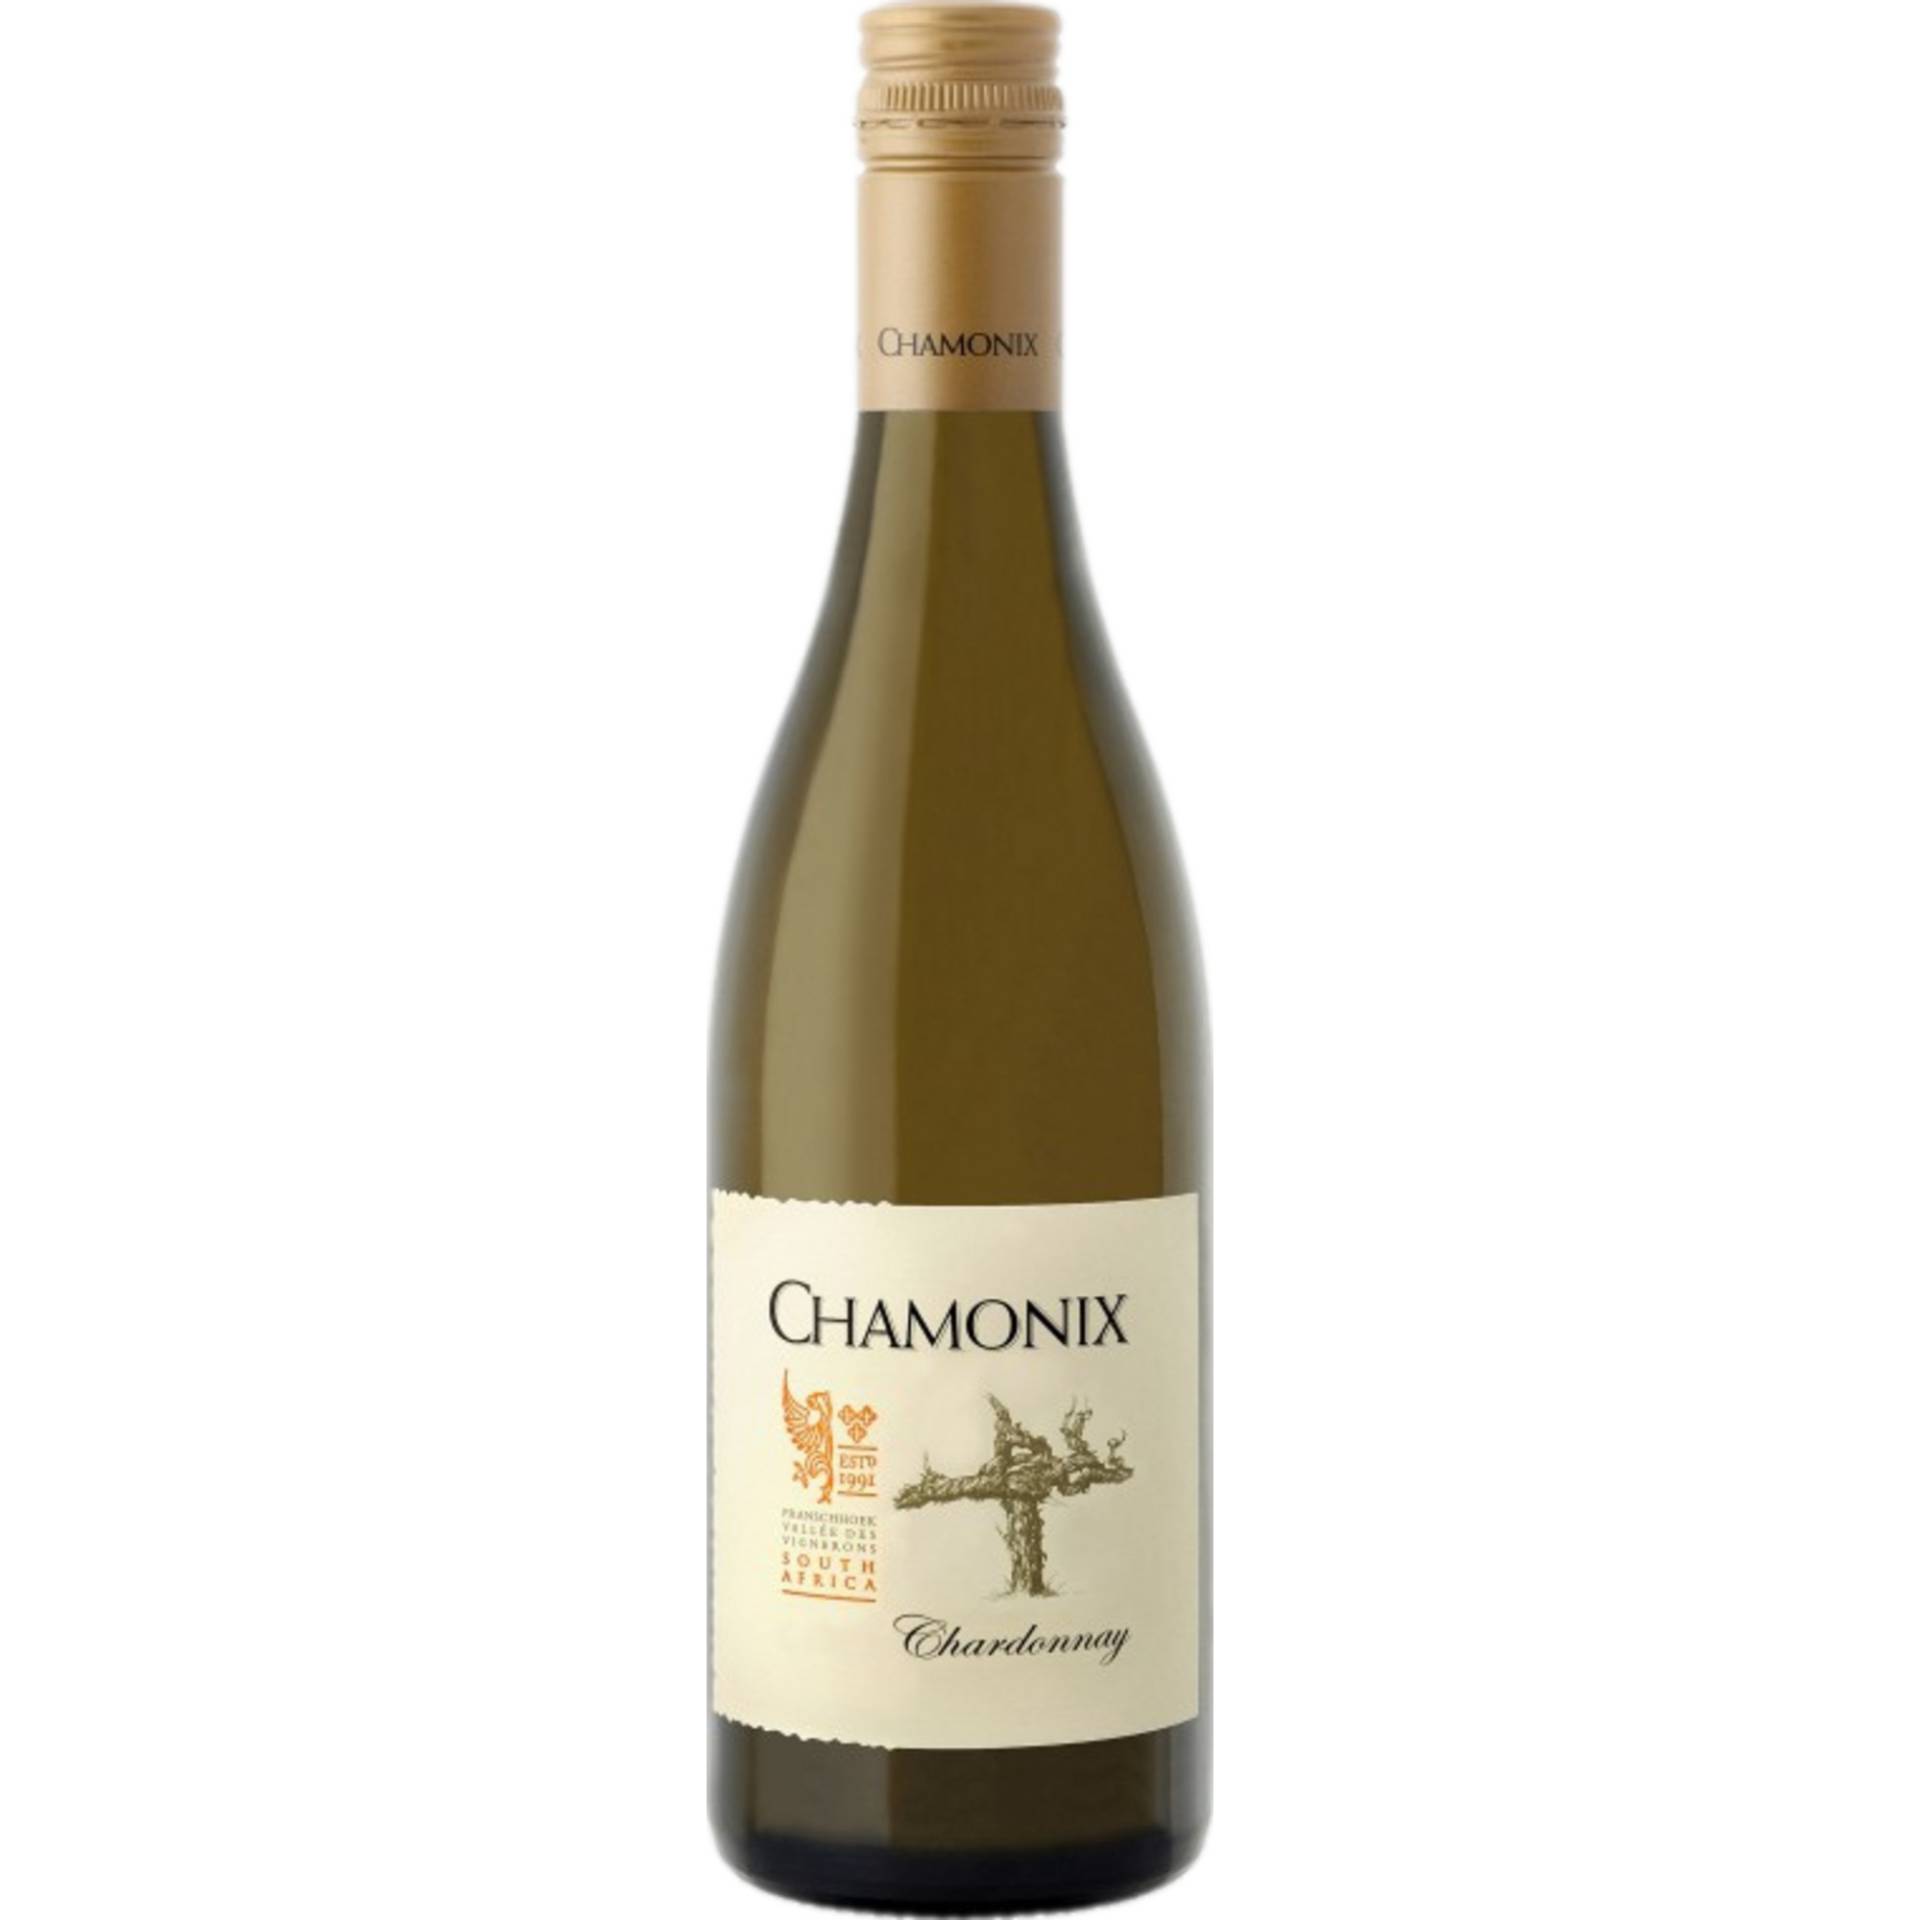 Chamonix Chardonnay, WO Franschhoek, Western Cape, 2021, Weißwein von CAPREO GmbH- Gildeweg 10- 46562 Voerde- Deutschland / Chamonix, Uitkyk St 40, 7690 Franschhoek, Südafrika